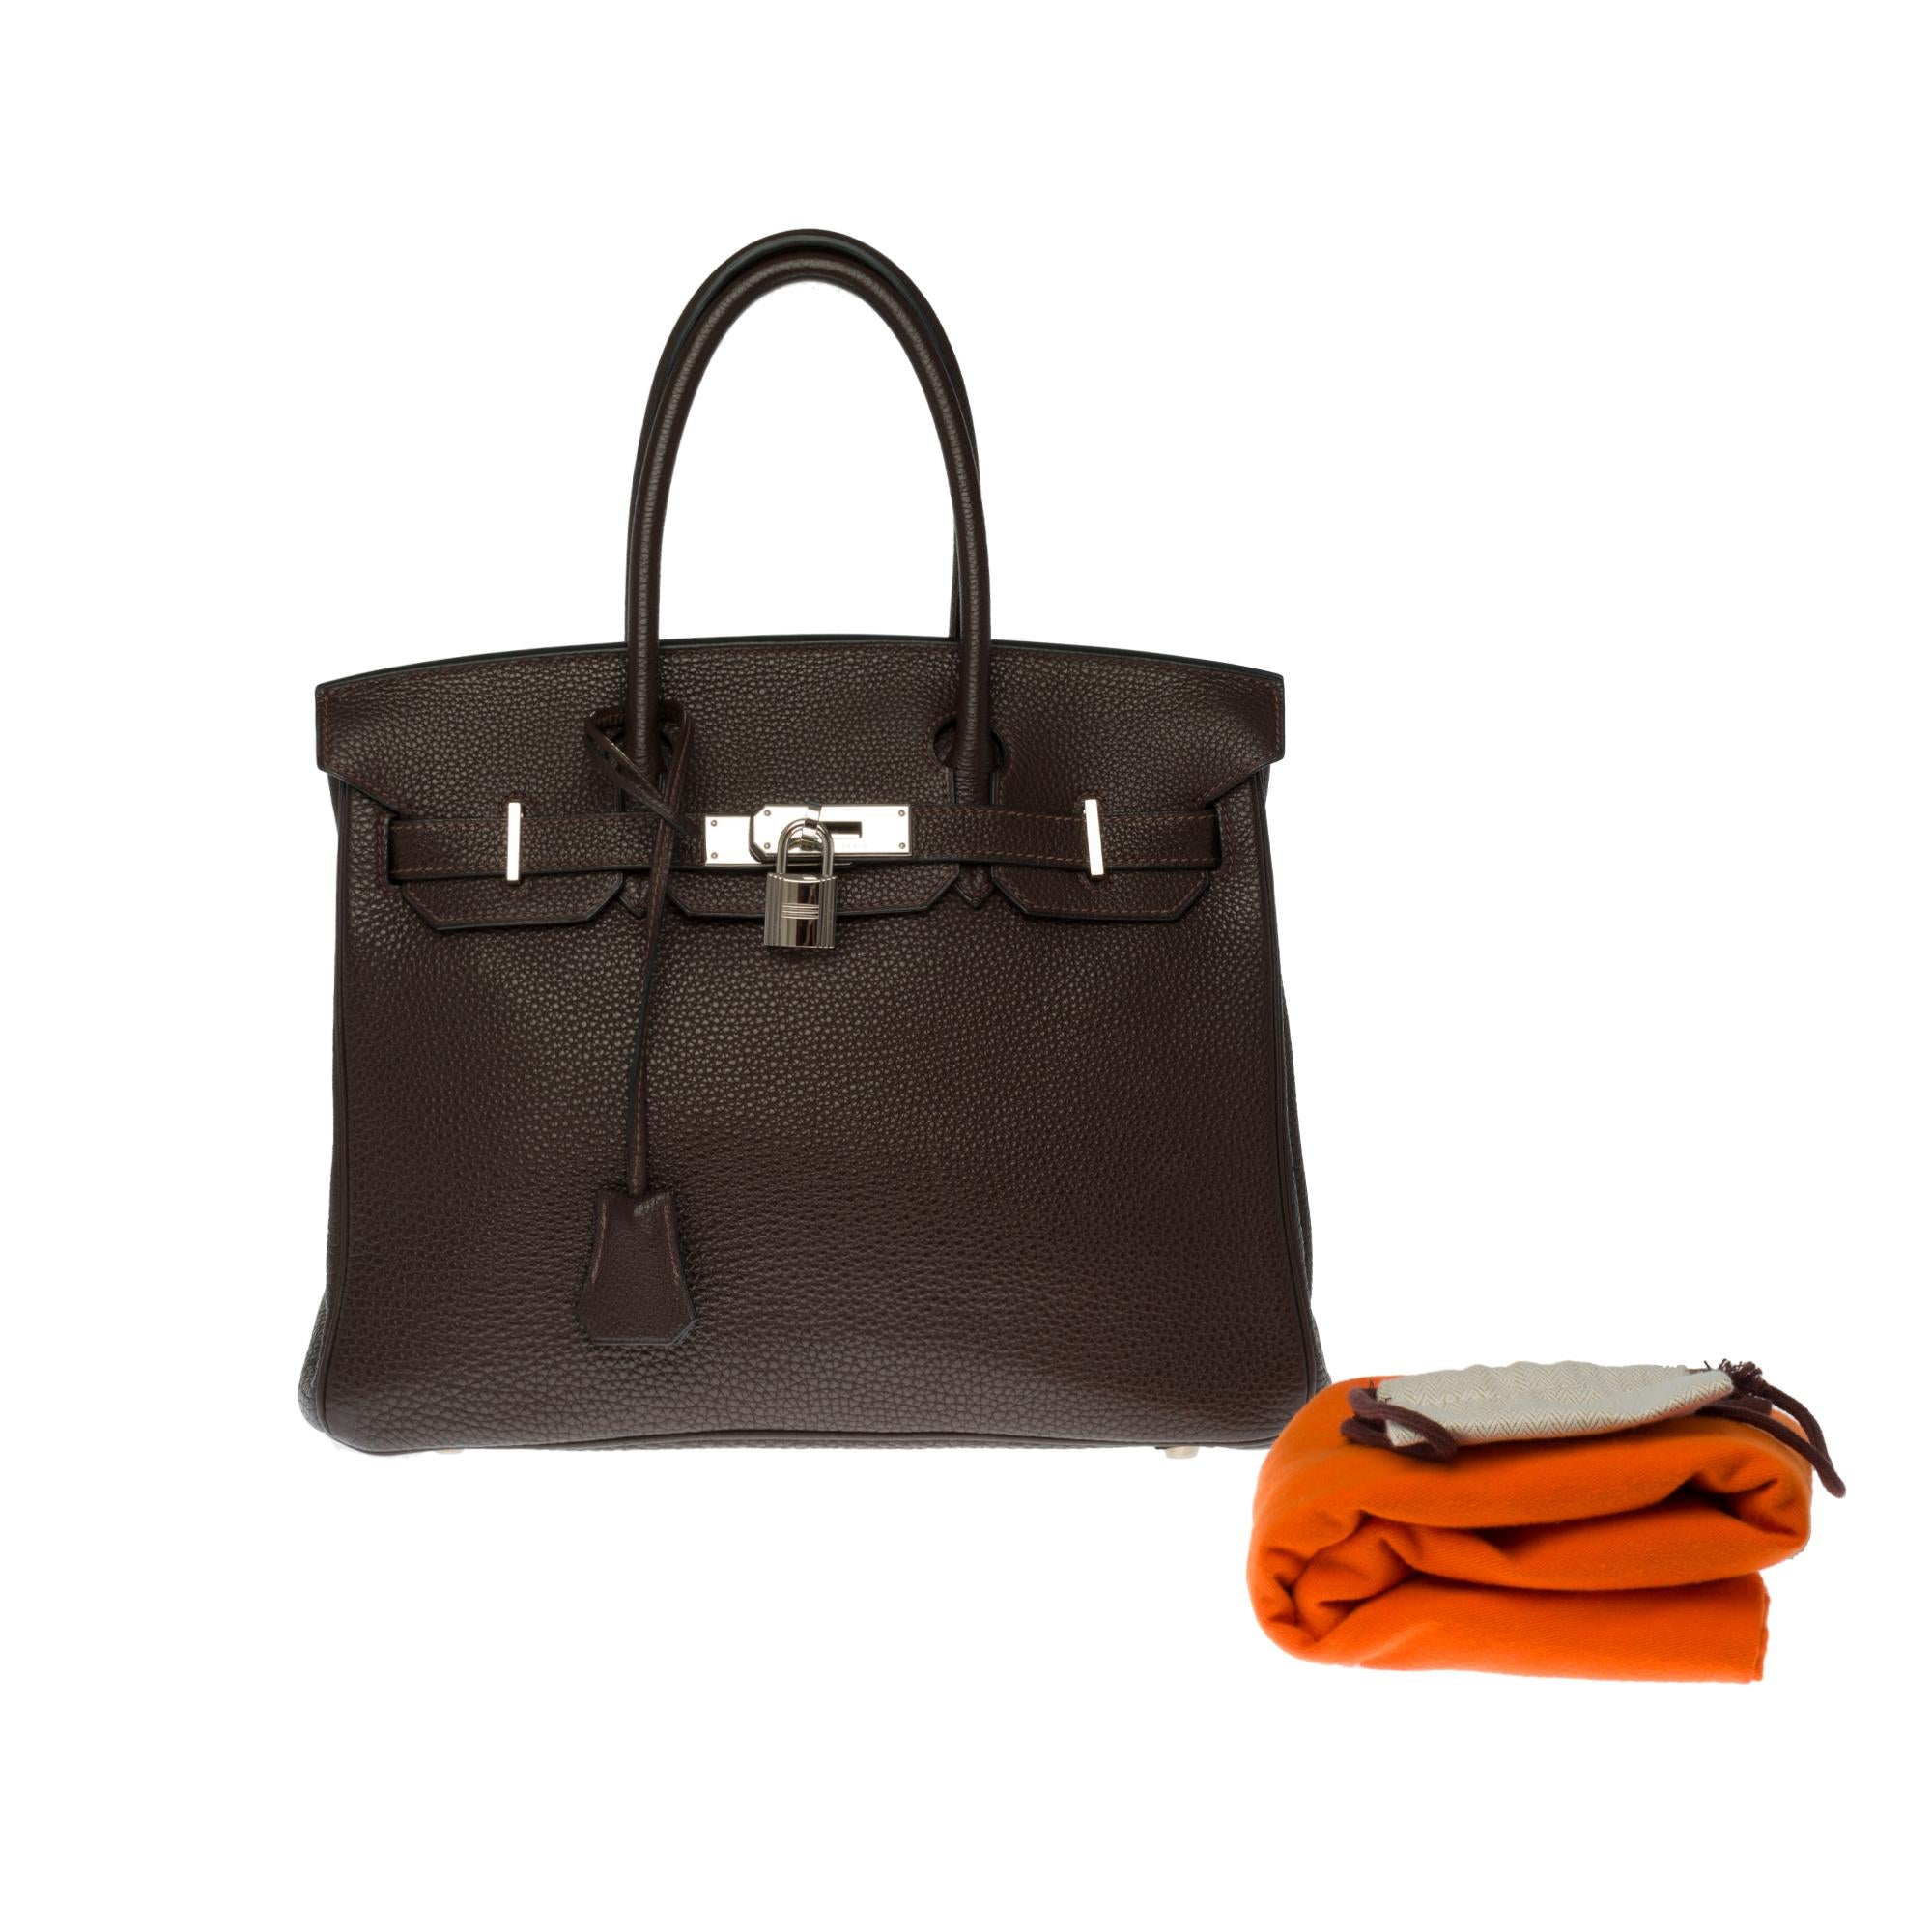 Hermès Birkin 30 handbag in Brown Togo leather, silver Palladium hardware 5